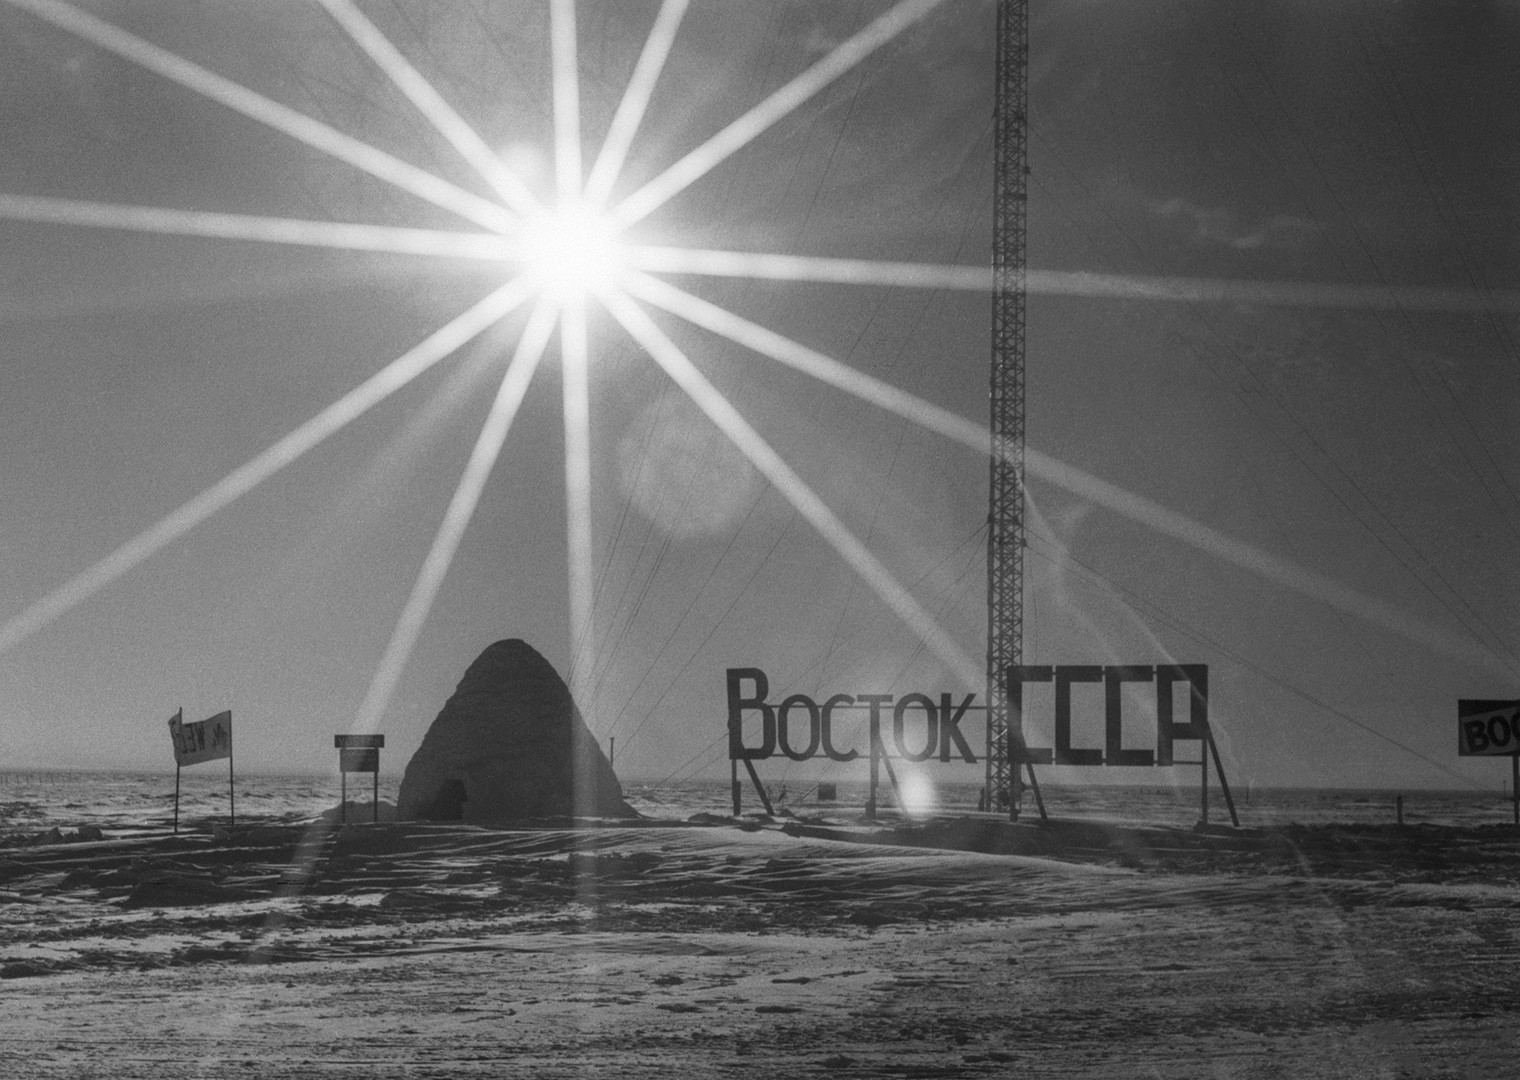 1994, Vostok